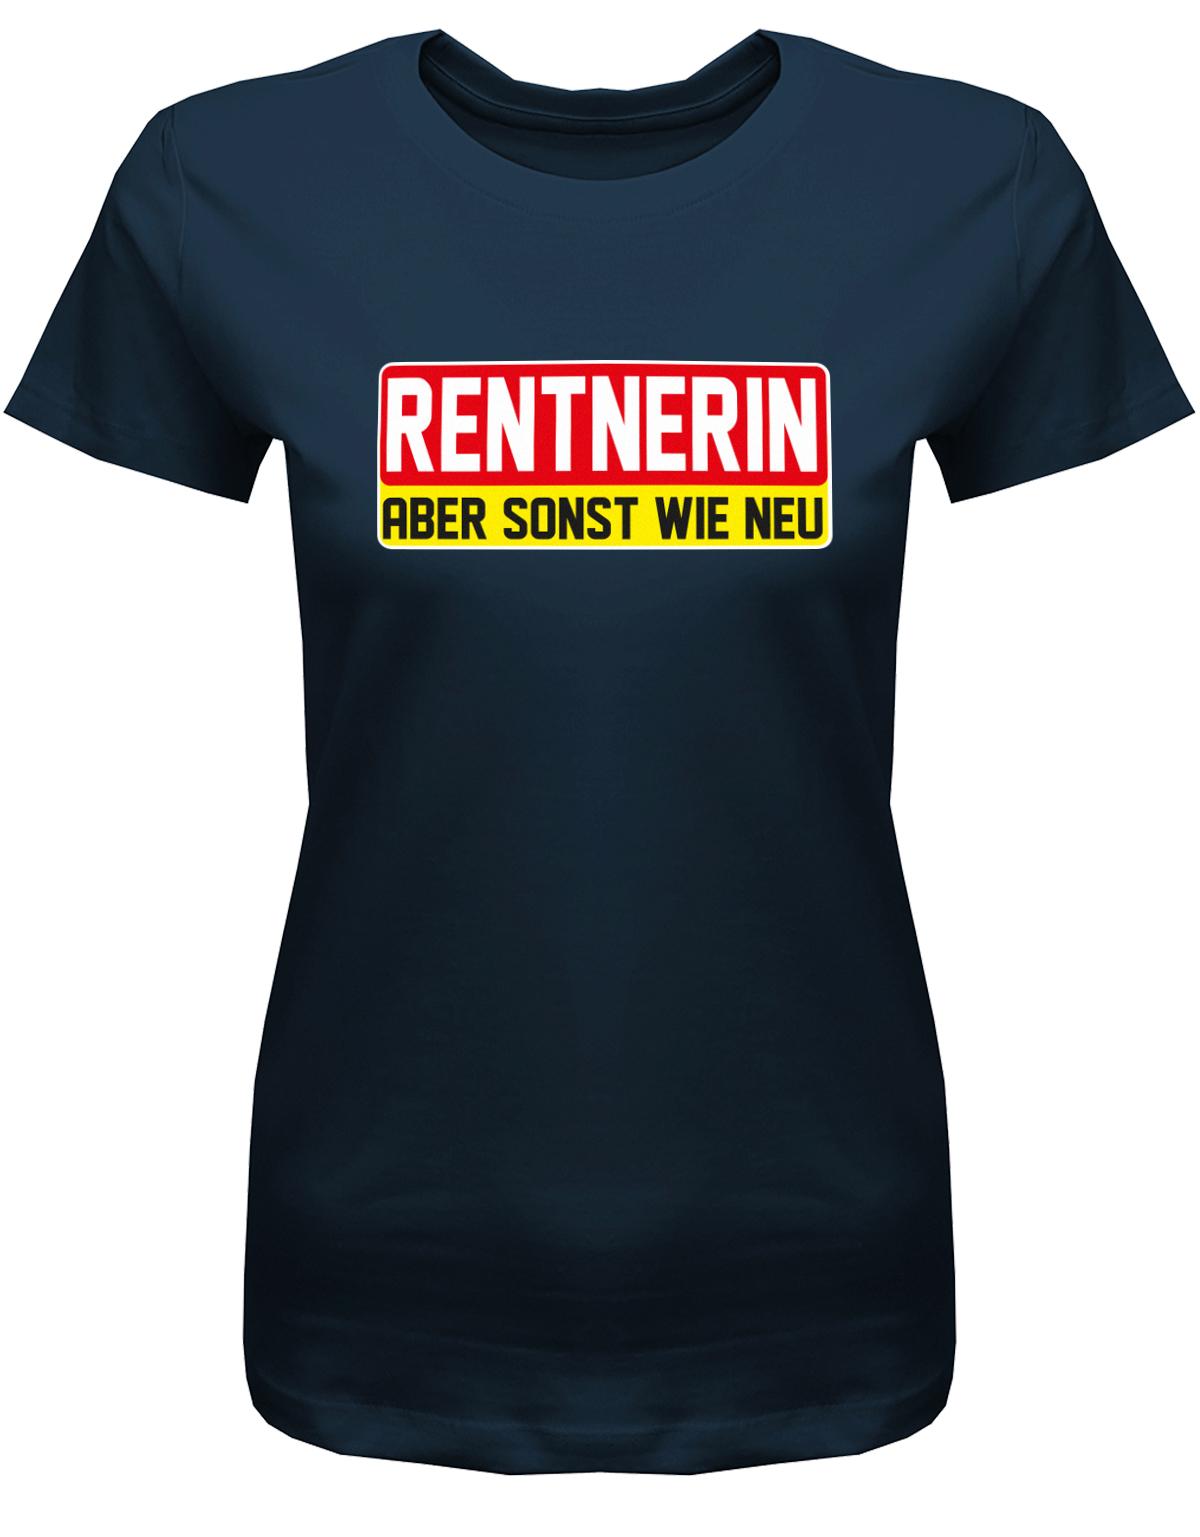 Rentnerin-aber-sonst-wie-neu-Damen-rente-Shirt-Navy